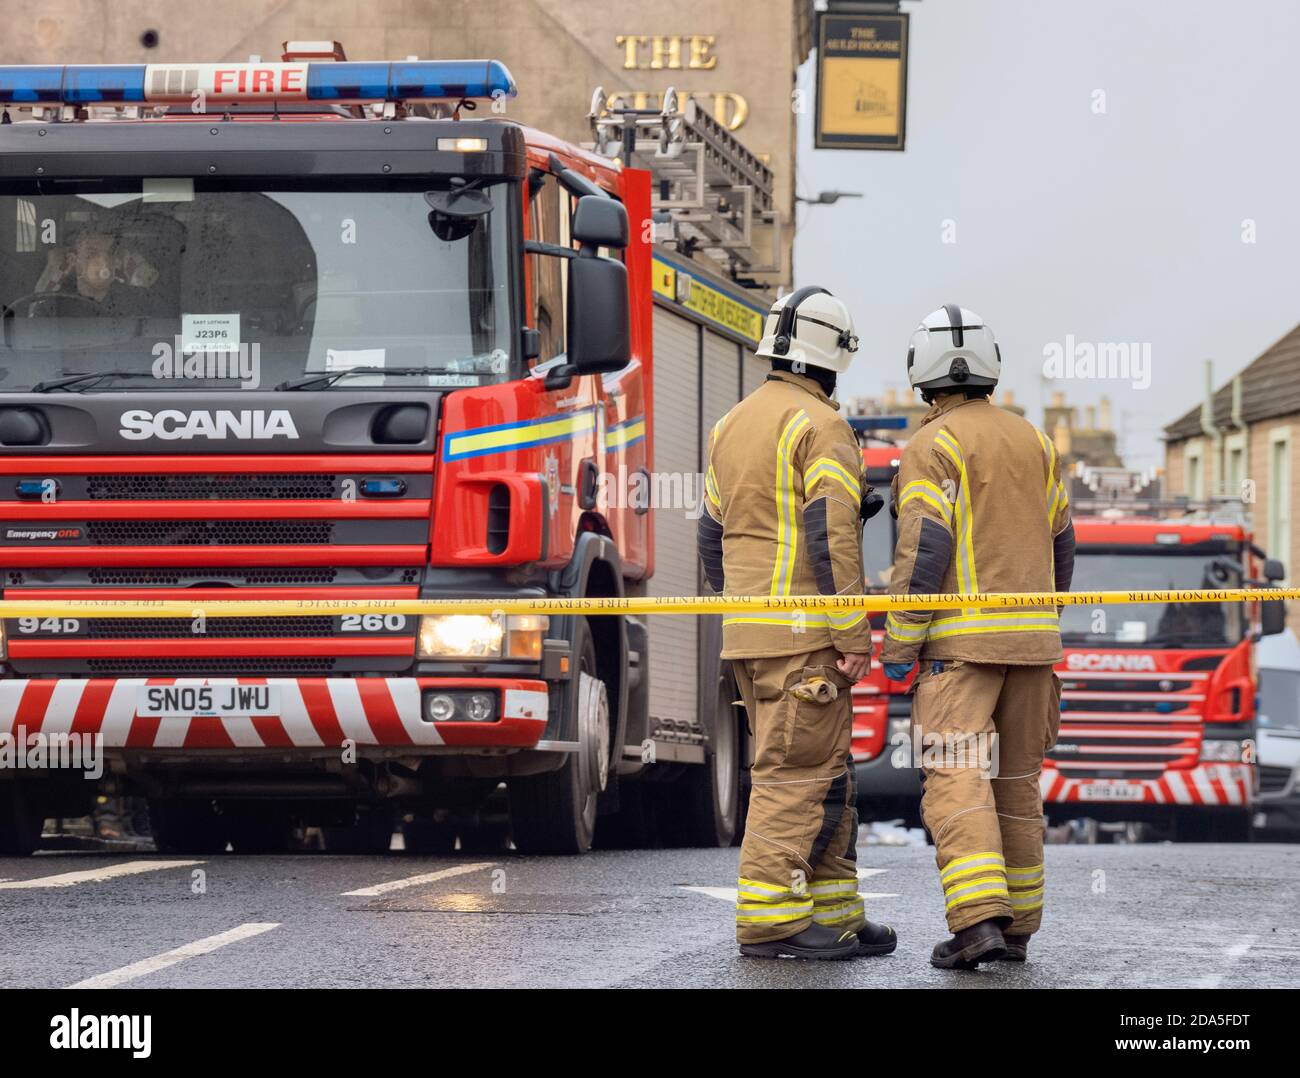 Les pompiers écossais du Service d'incendie et de sauvetage s'attaquent à un incendie à North Berwick, East Lothian, Écosse, Royaume-Uni. Banque D'Images